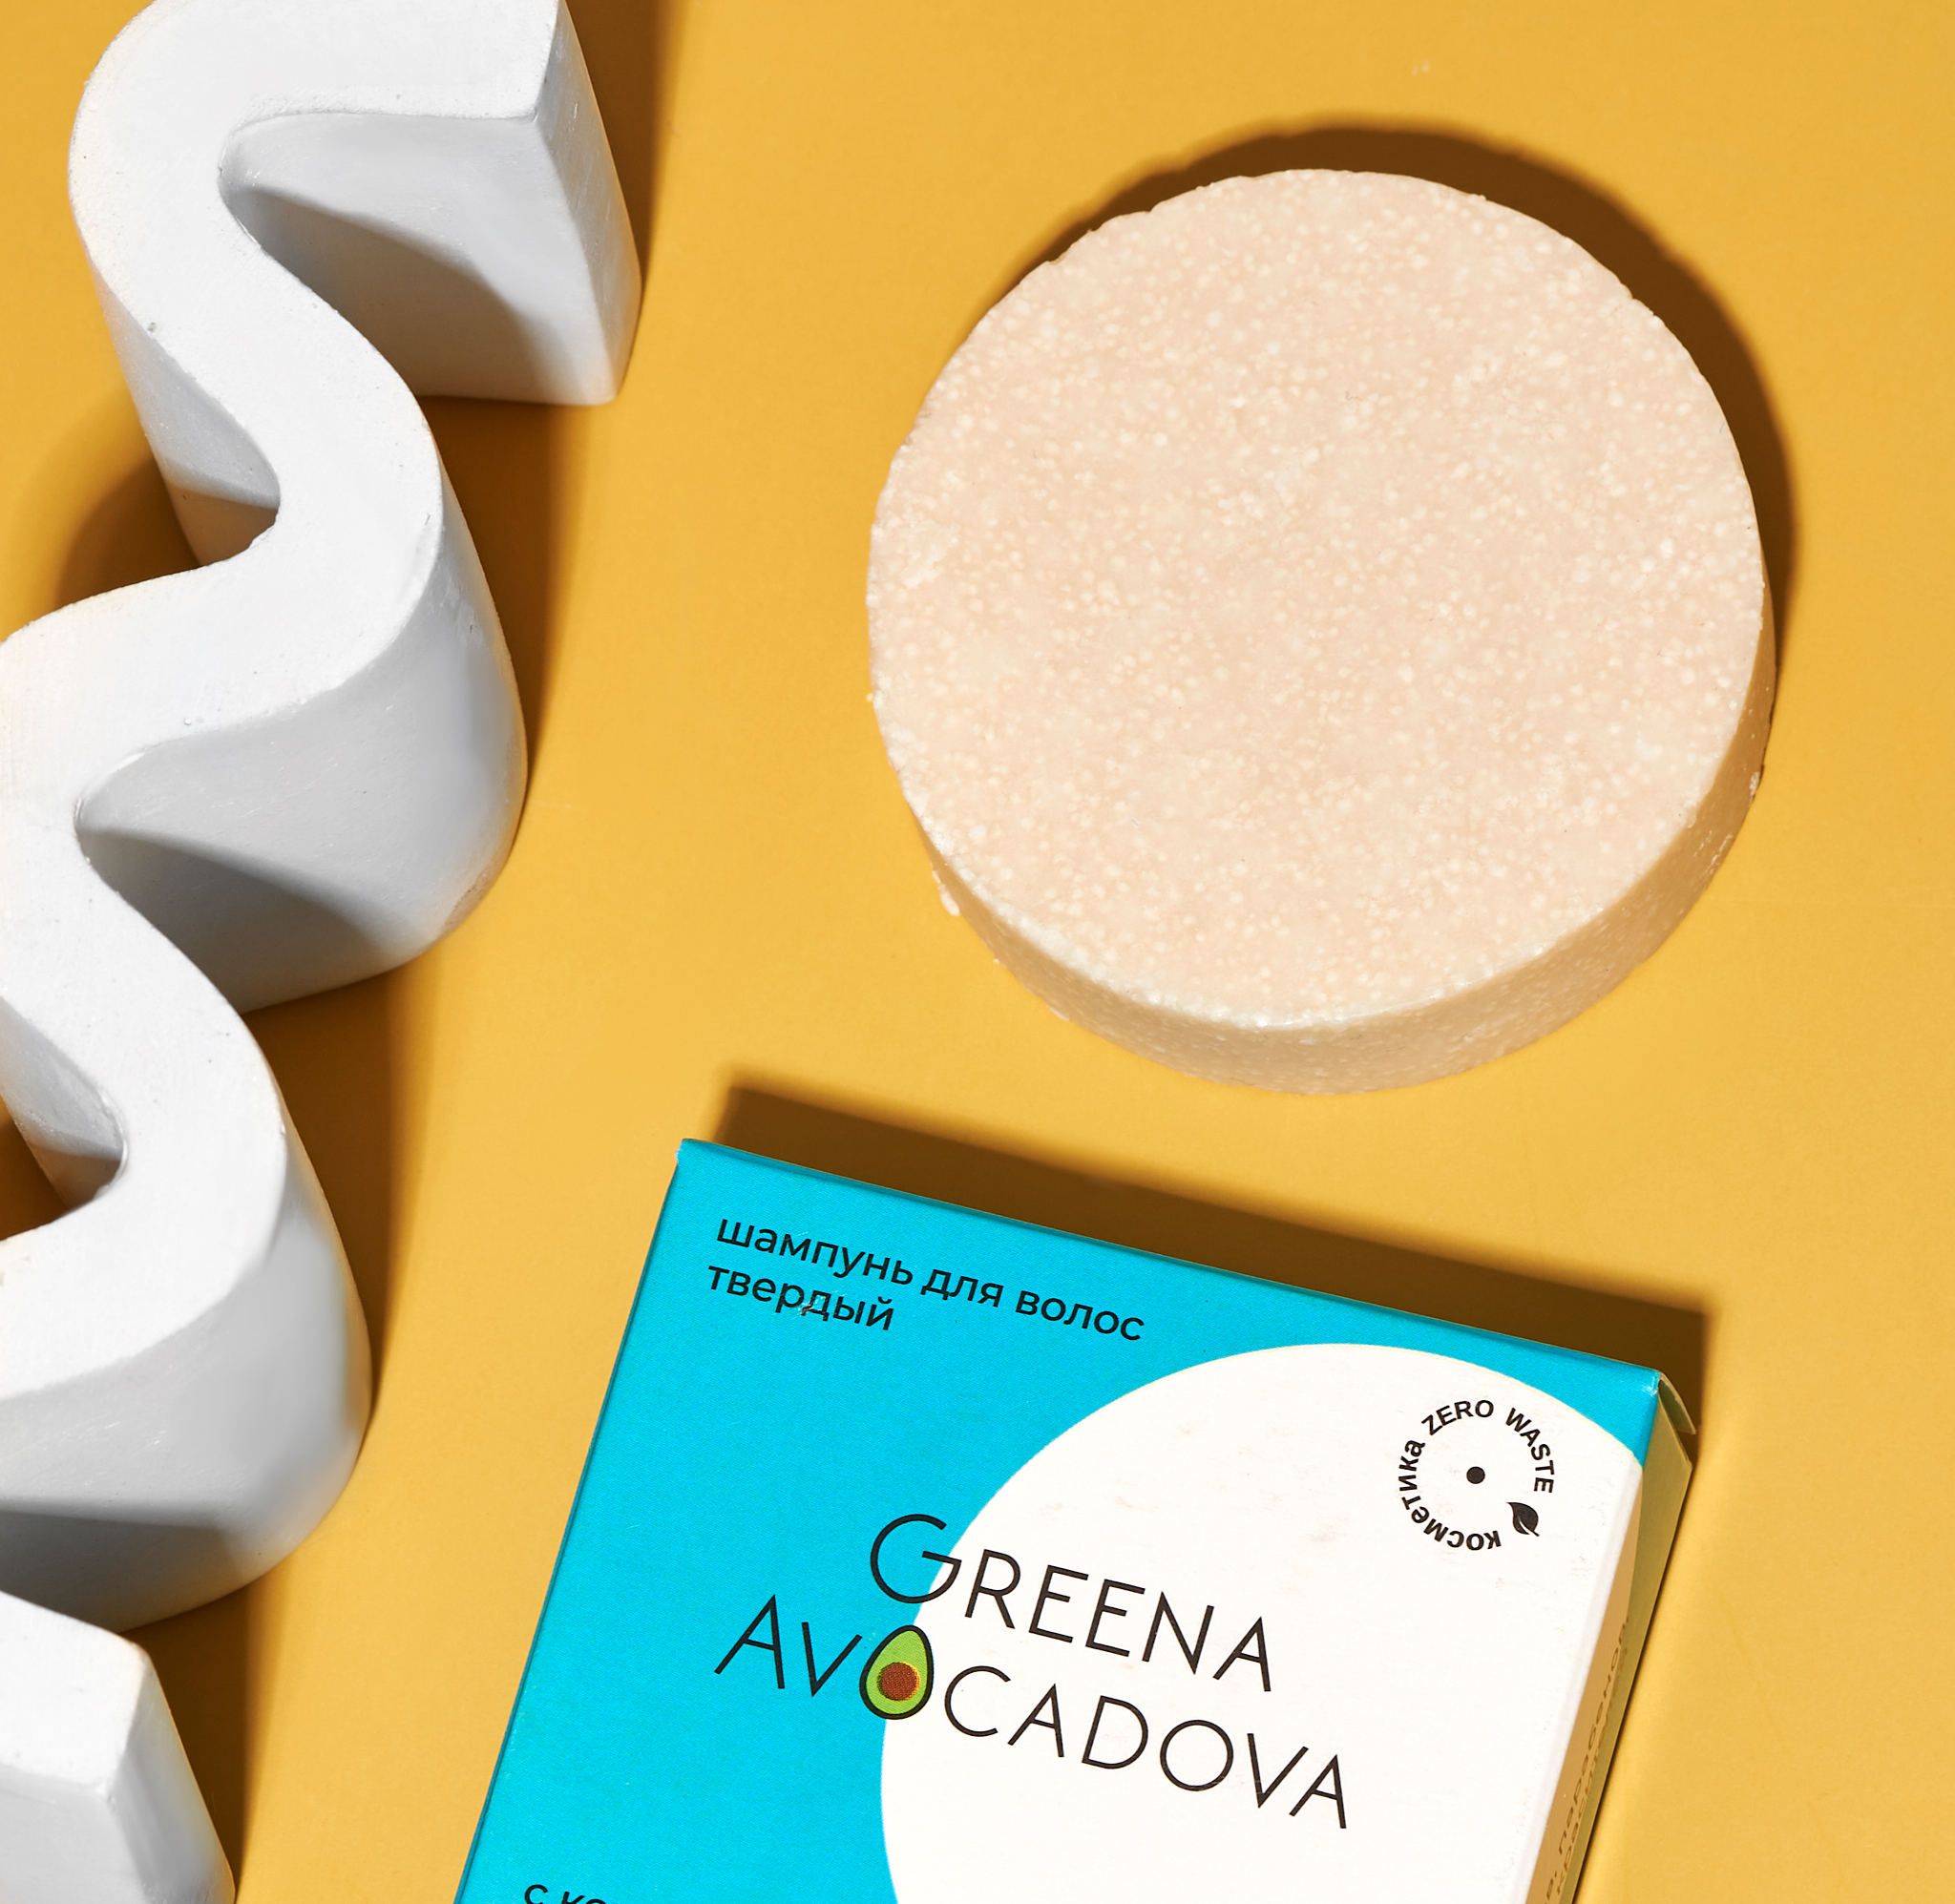 Твердый шампунь Greena Avocadova с кокосовым молочком для сухой кожи головы - фото 5